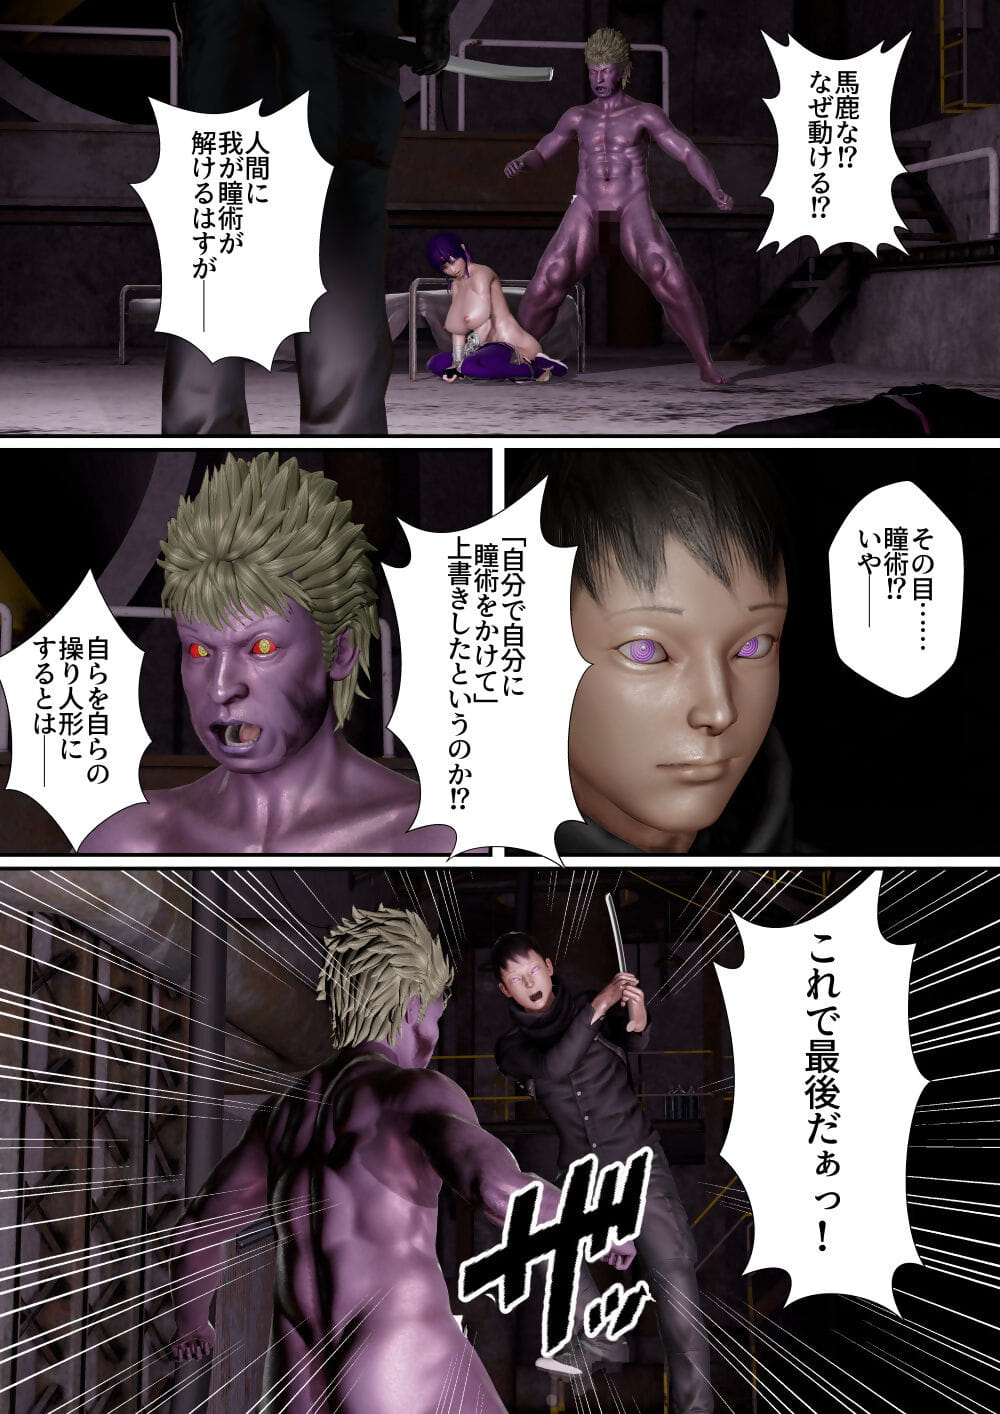 Goriramu Touma kenshi shiriizu Demon Swordsman Series - part 3 page 1